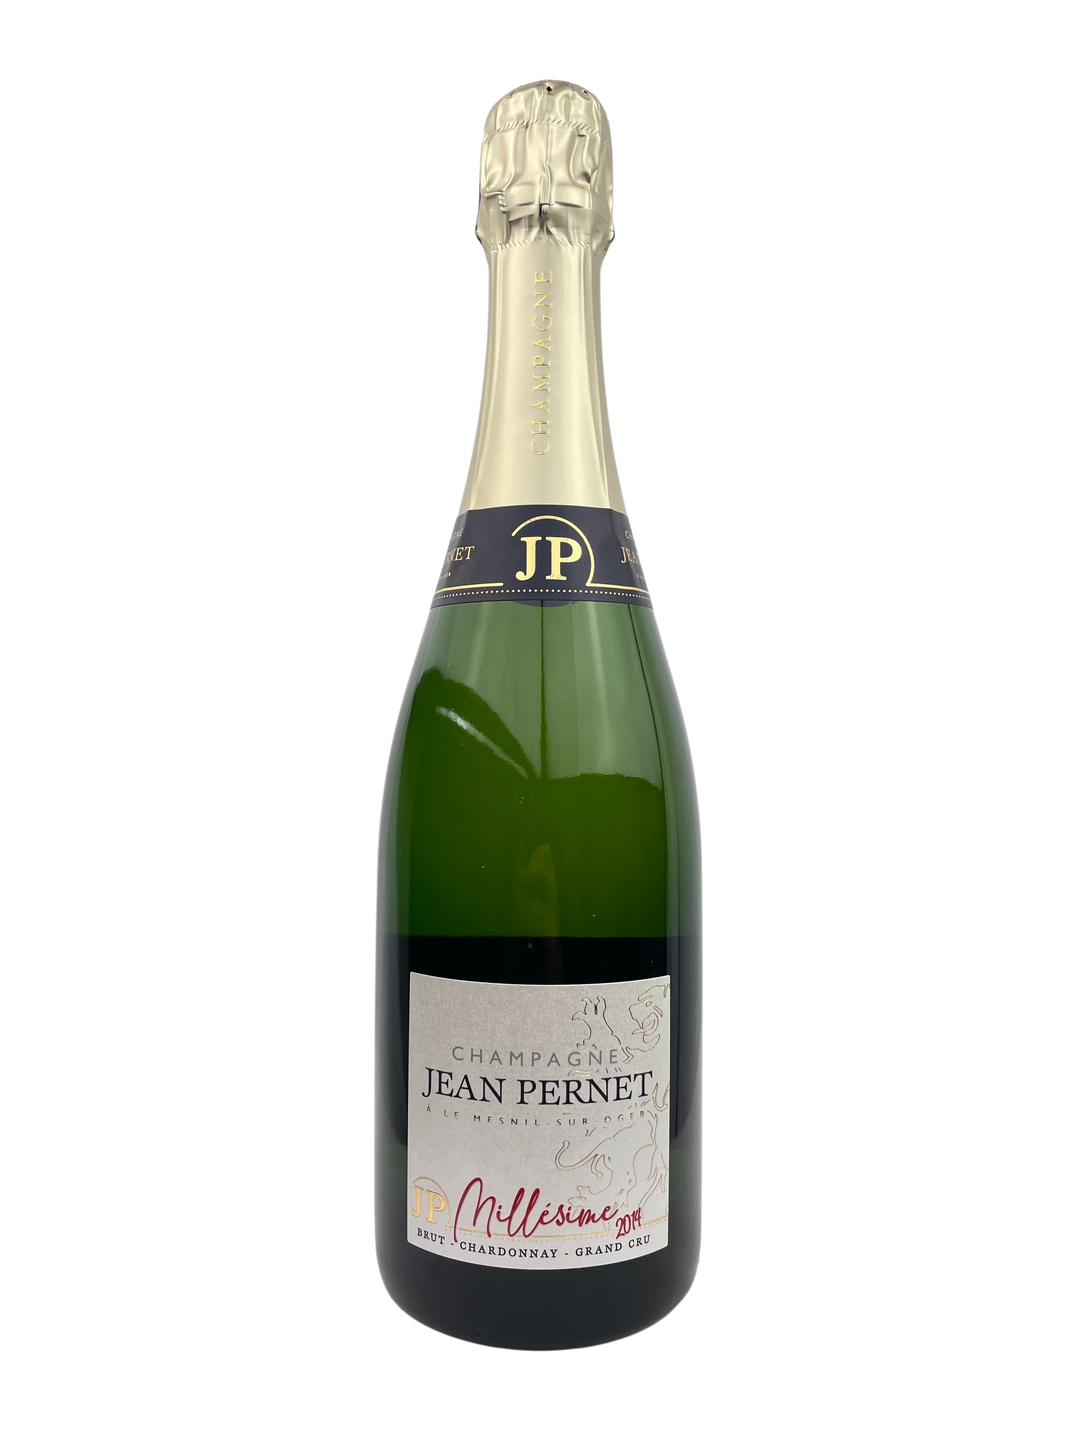 Jean Pernet Champagne Millésime Brut Grand Cru 2014